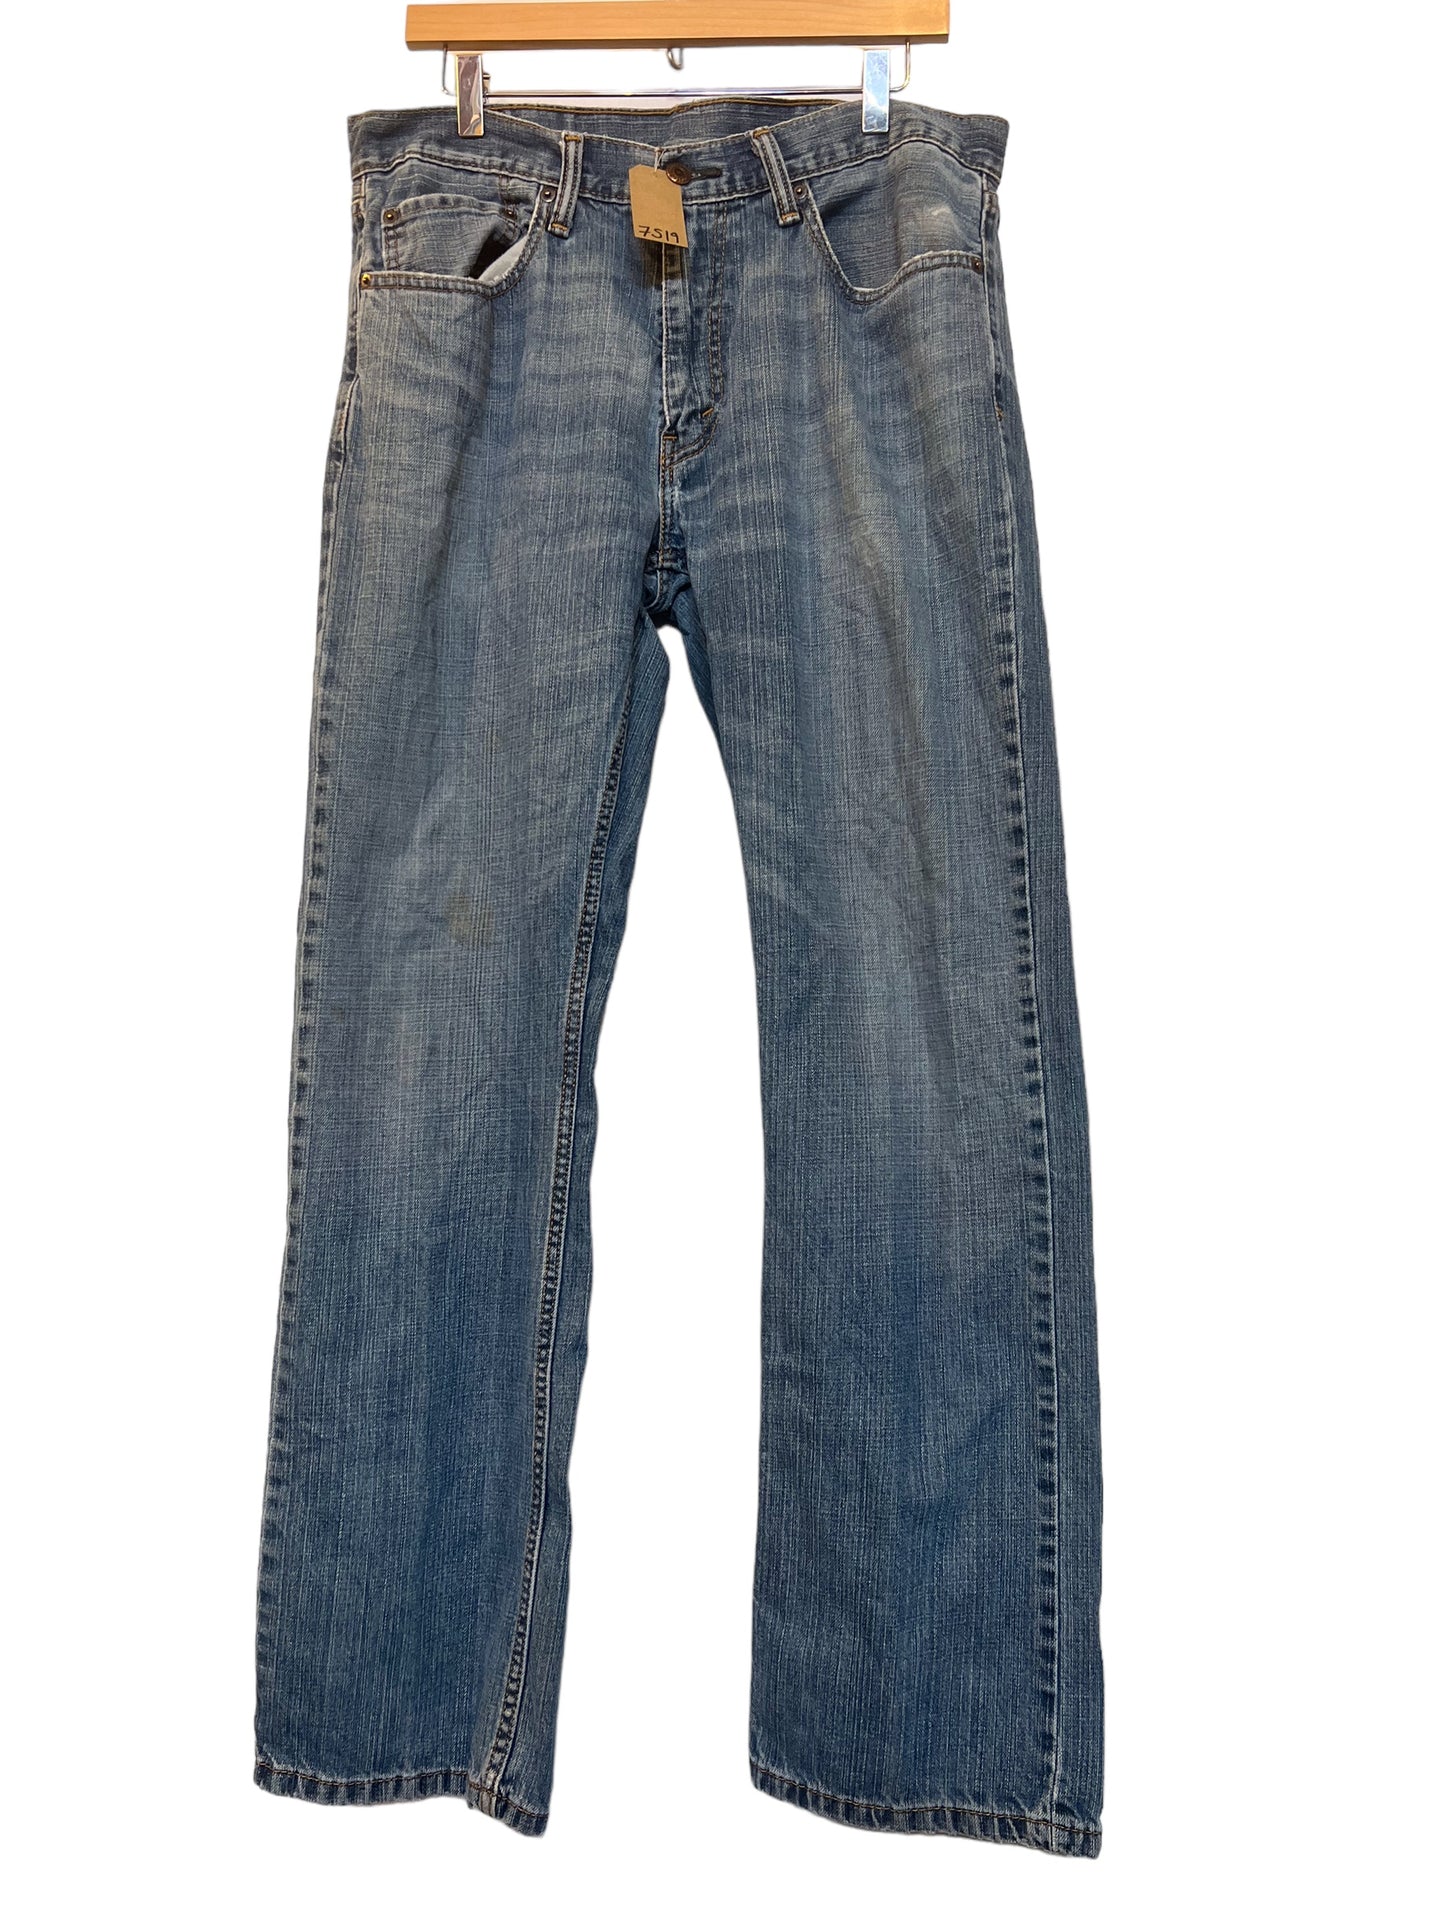 Levi 559 jeans (34x34)